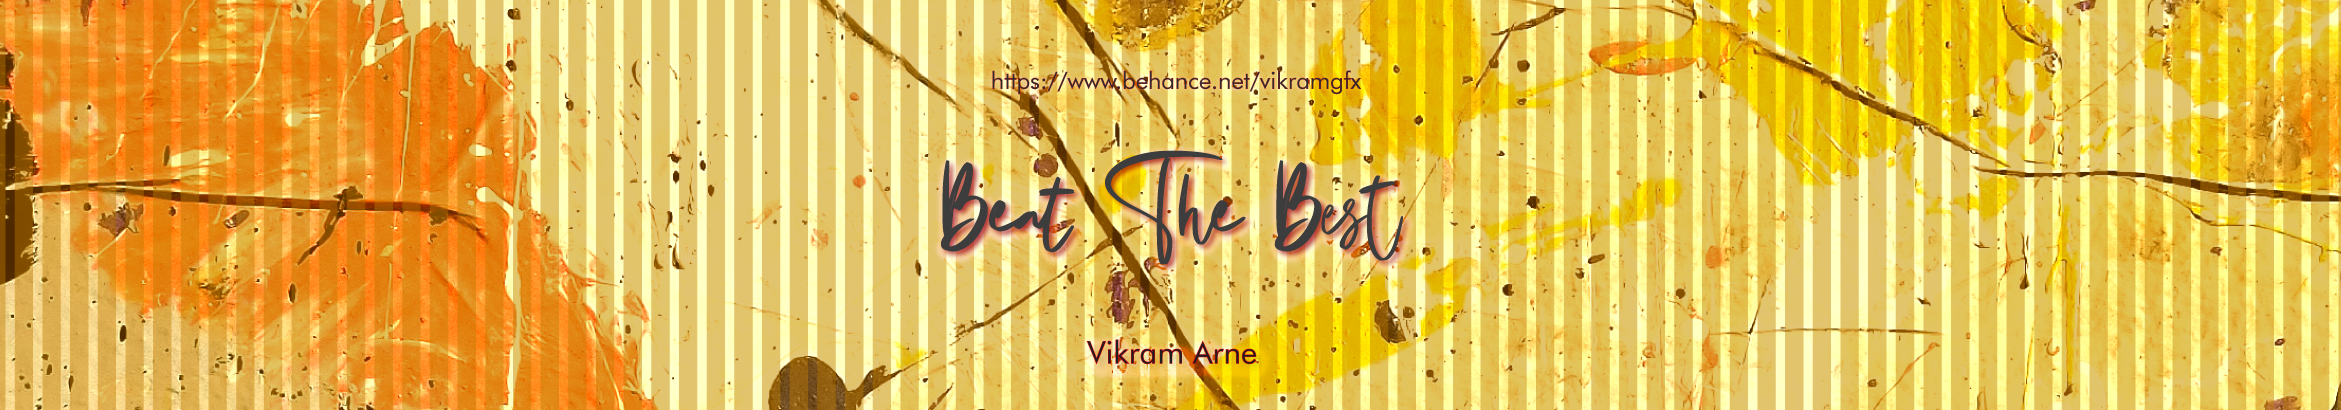 Vikram Arne's profile banner